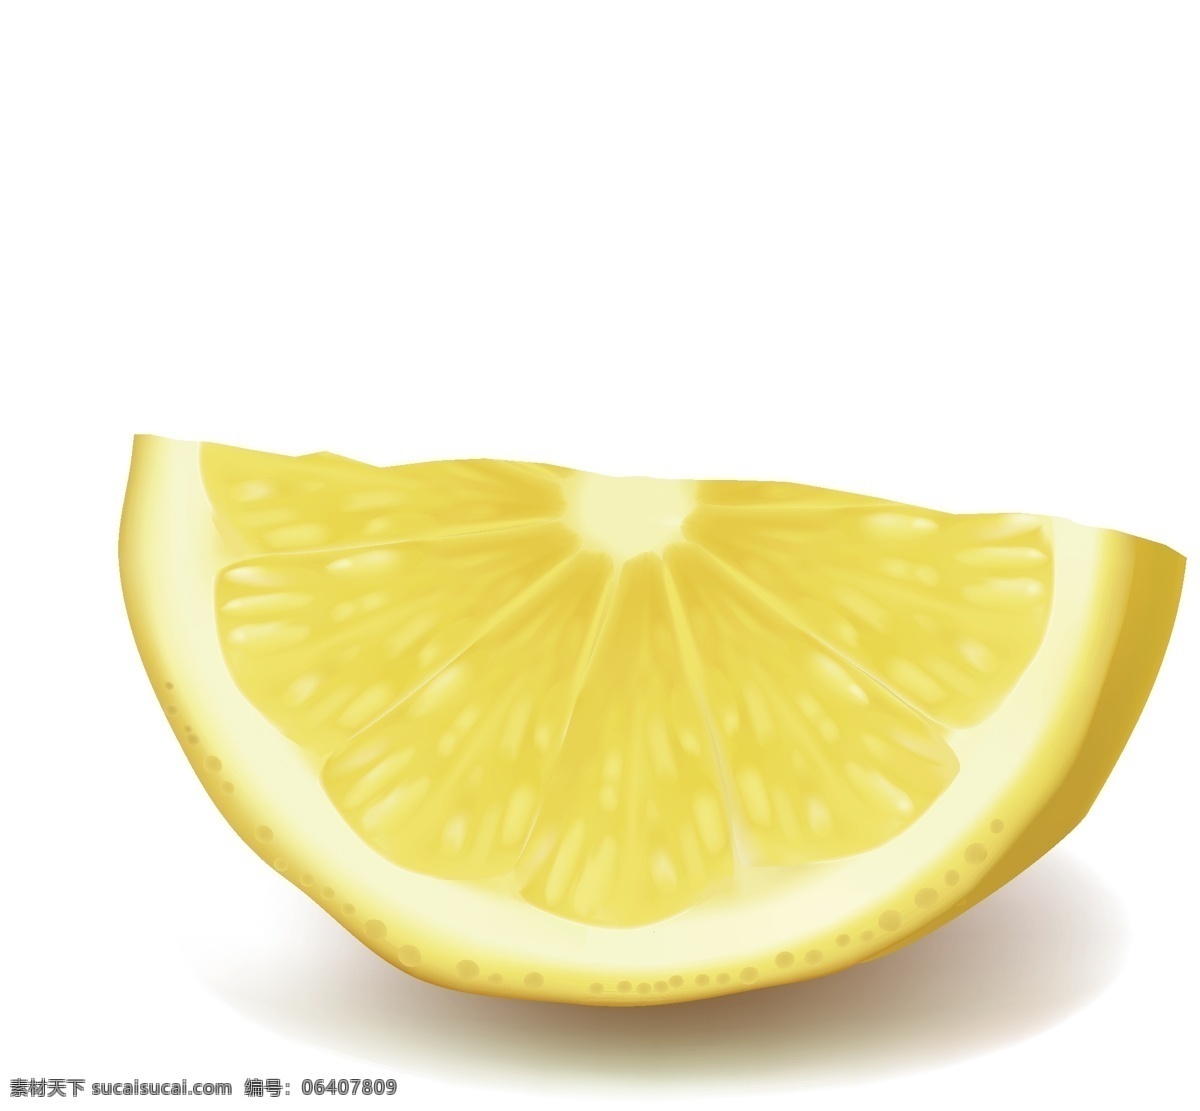 卡通 手绘 柠檬 元素 矢量图 黄色 卡通水果 清新